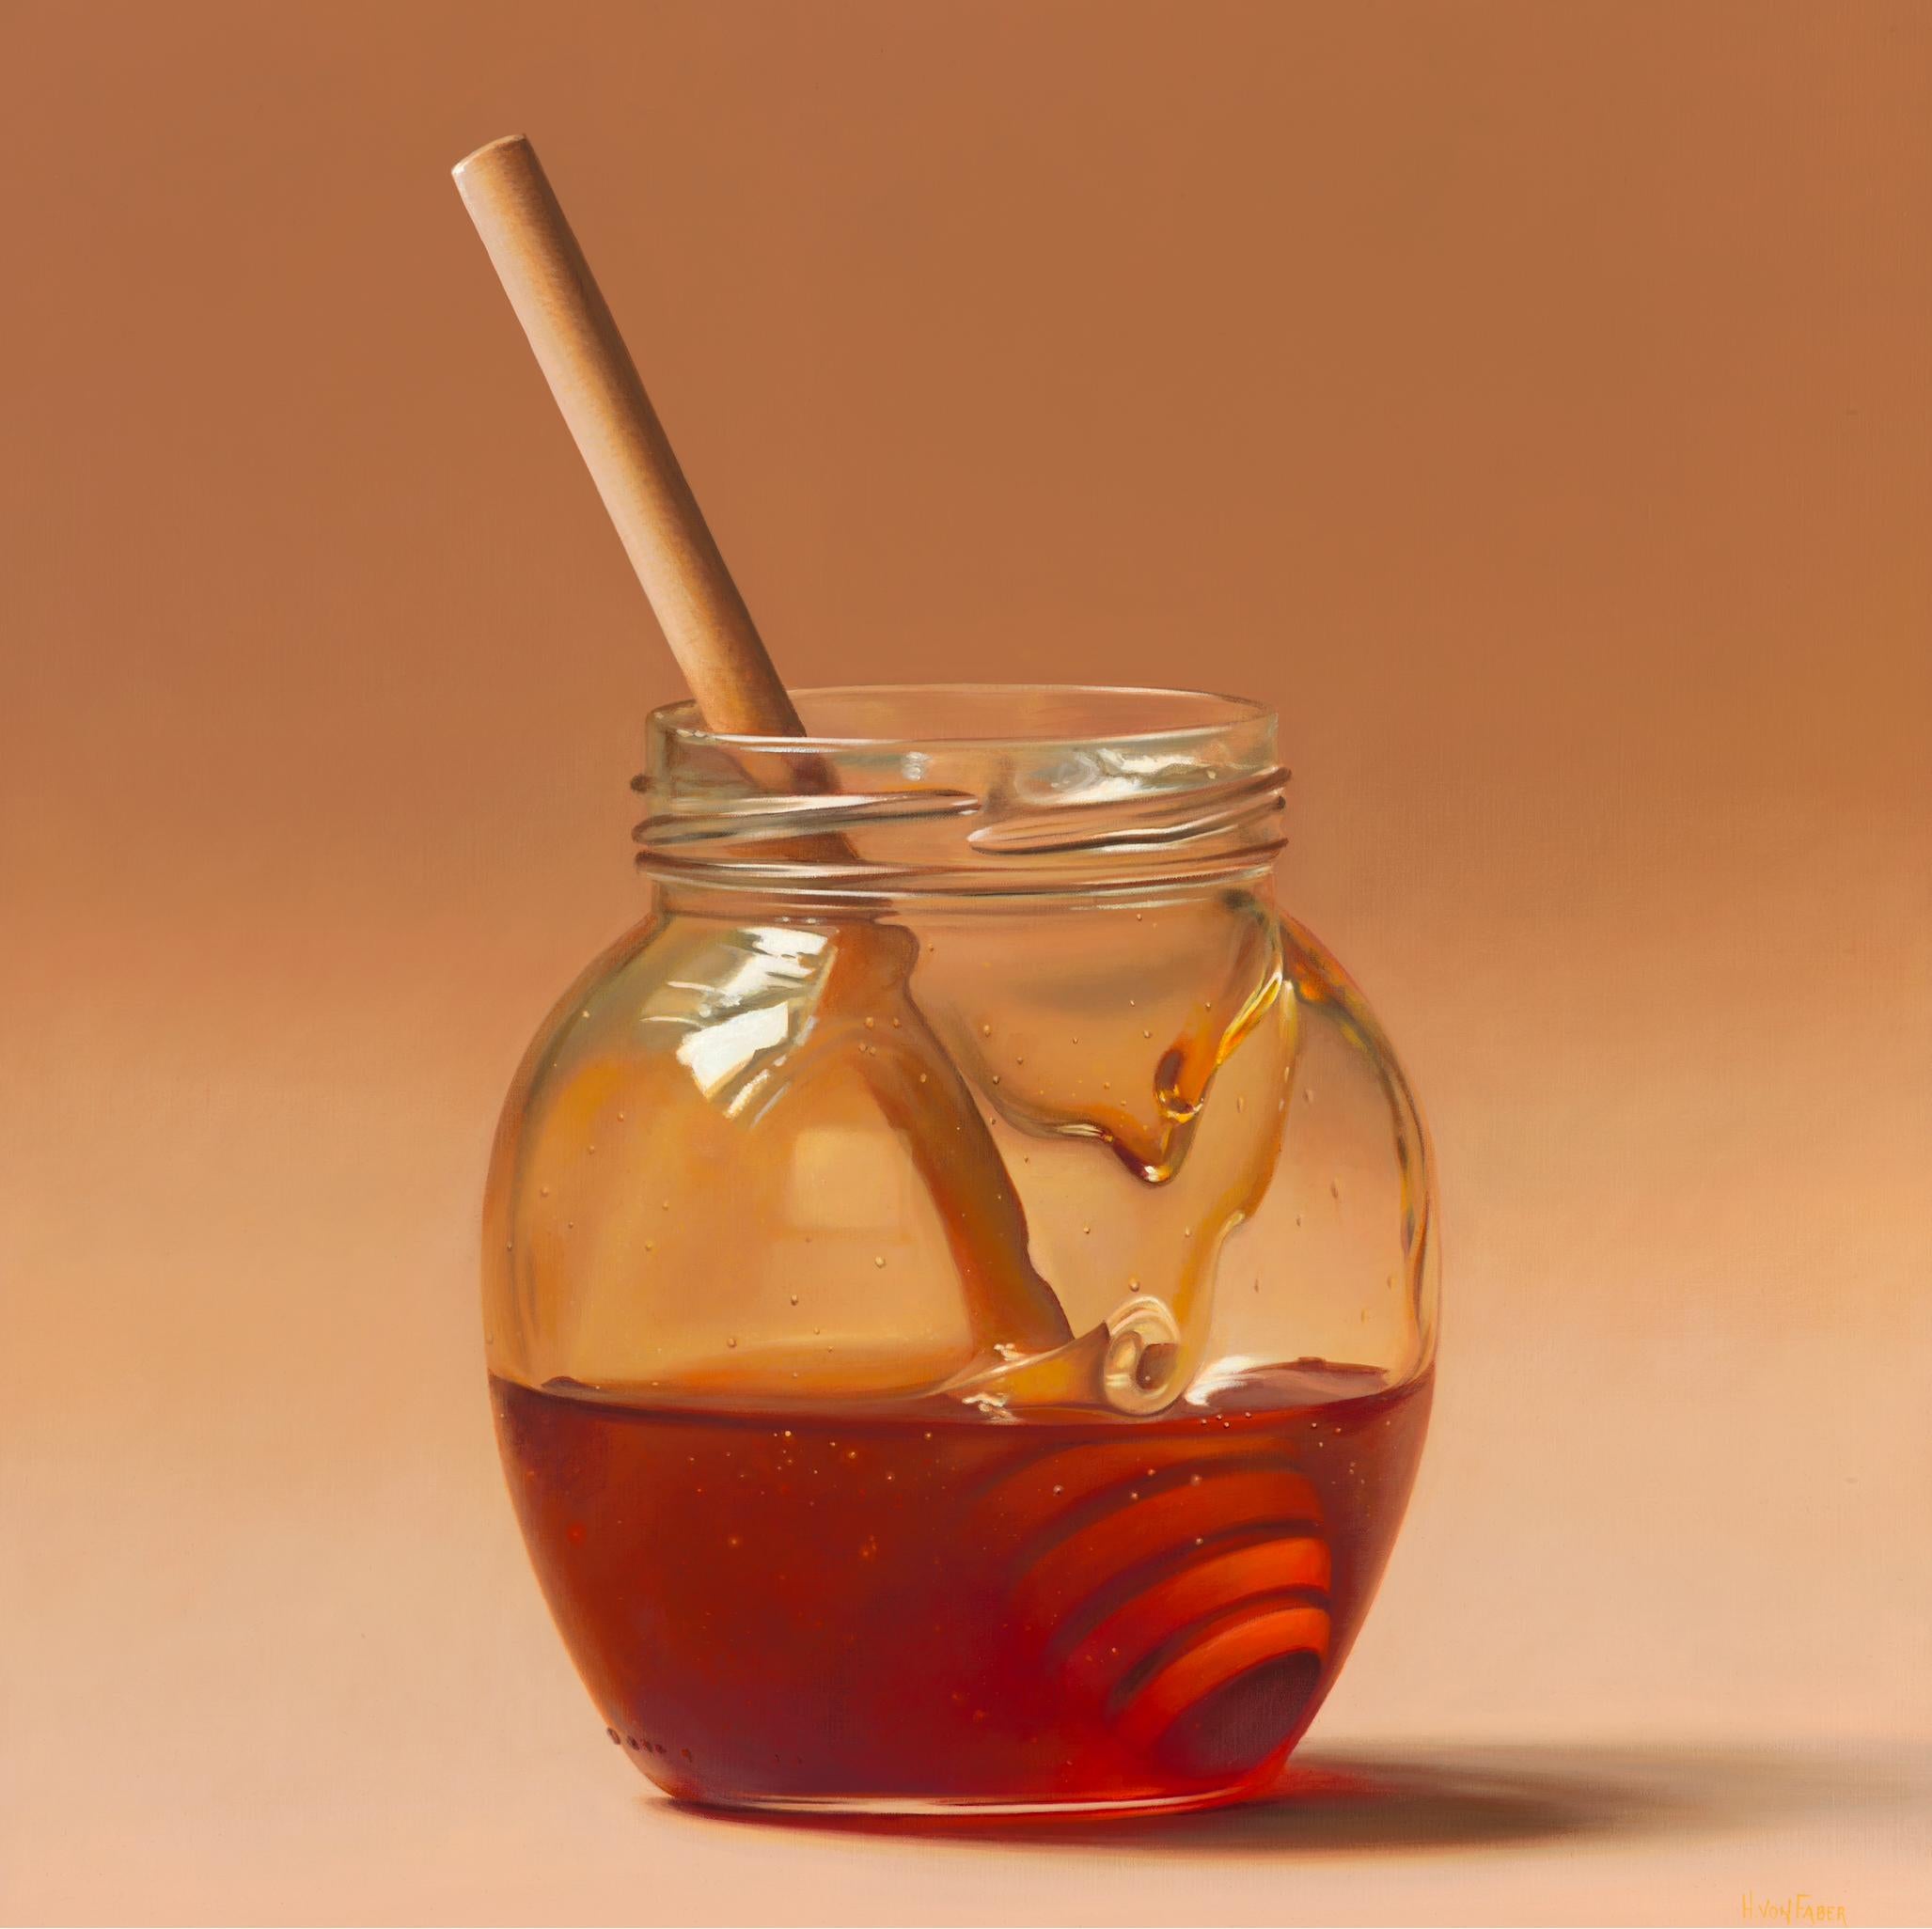 Cuillère à miel dans un JAR - 21e siècle - Peinture hyperréaliste de nature morte